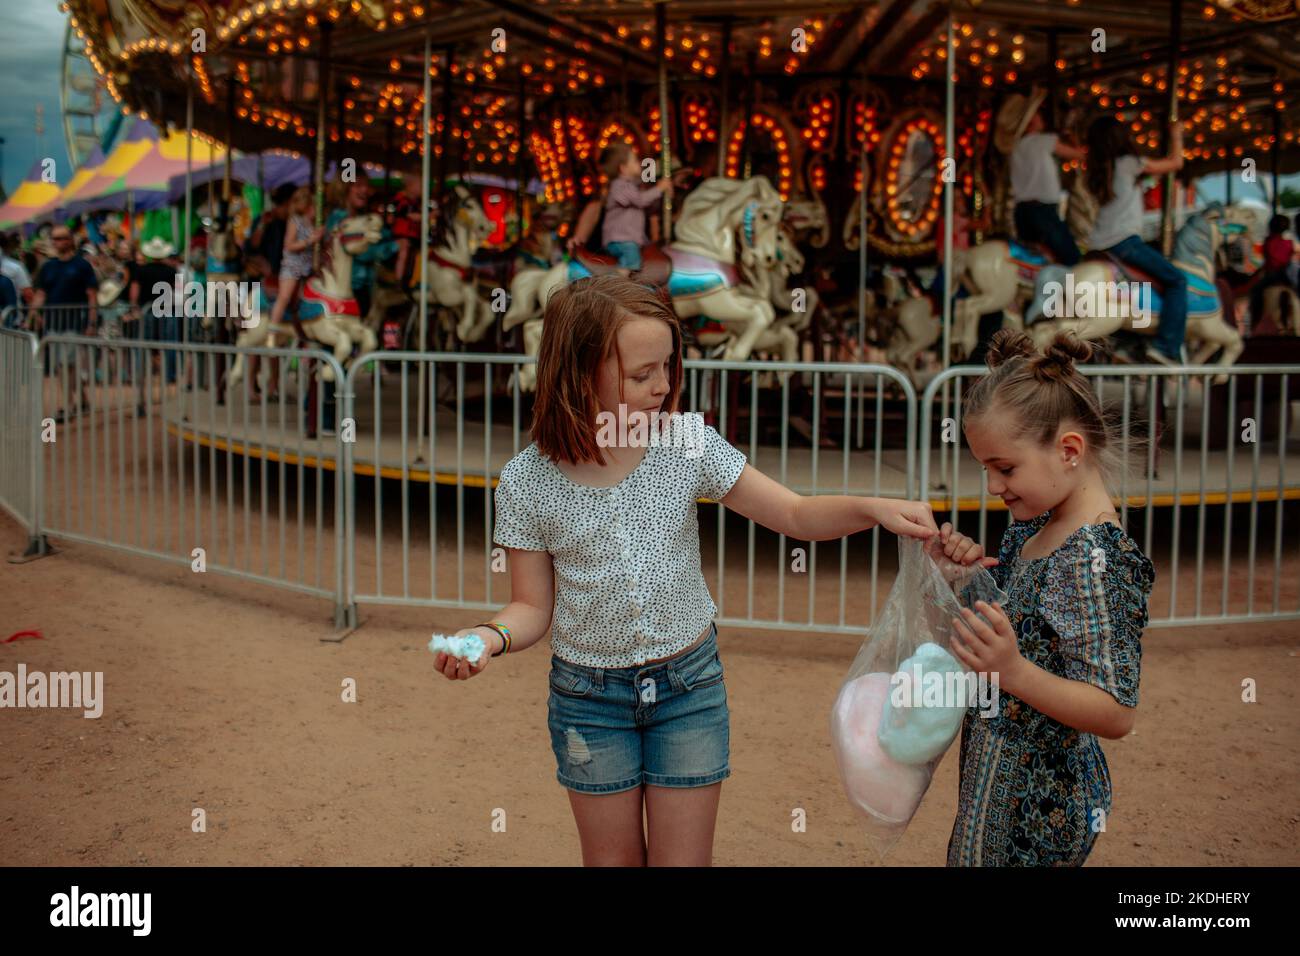 Deux jeunes filles partagent un sac de bonbons en coton lors d'un carnaval Banque D'Images